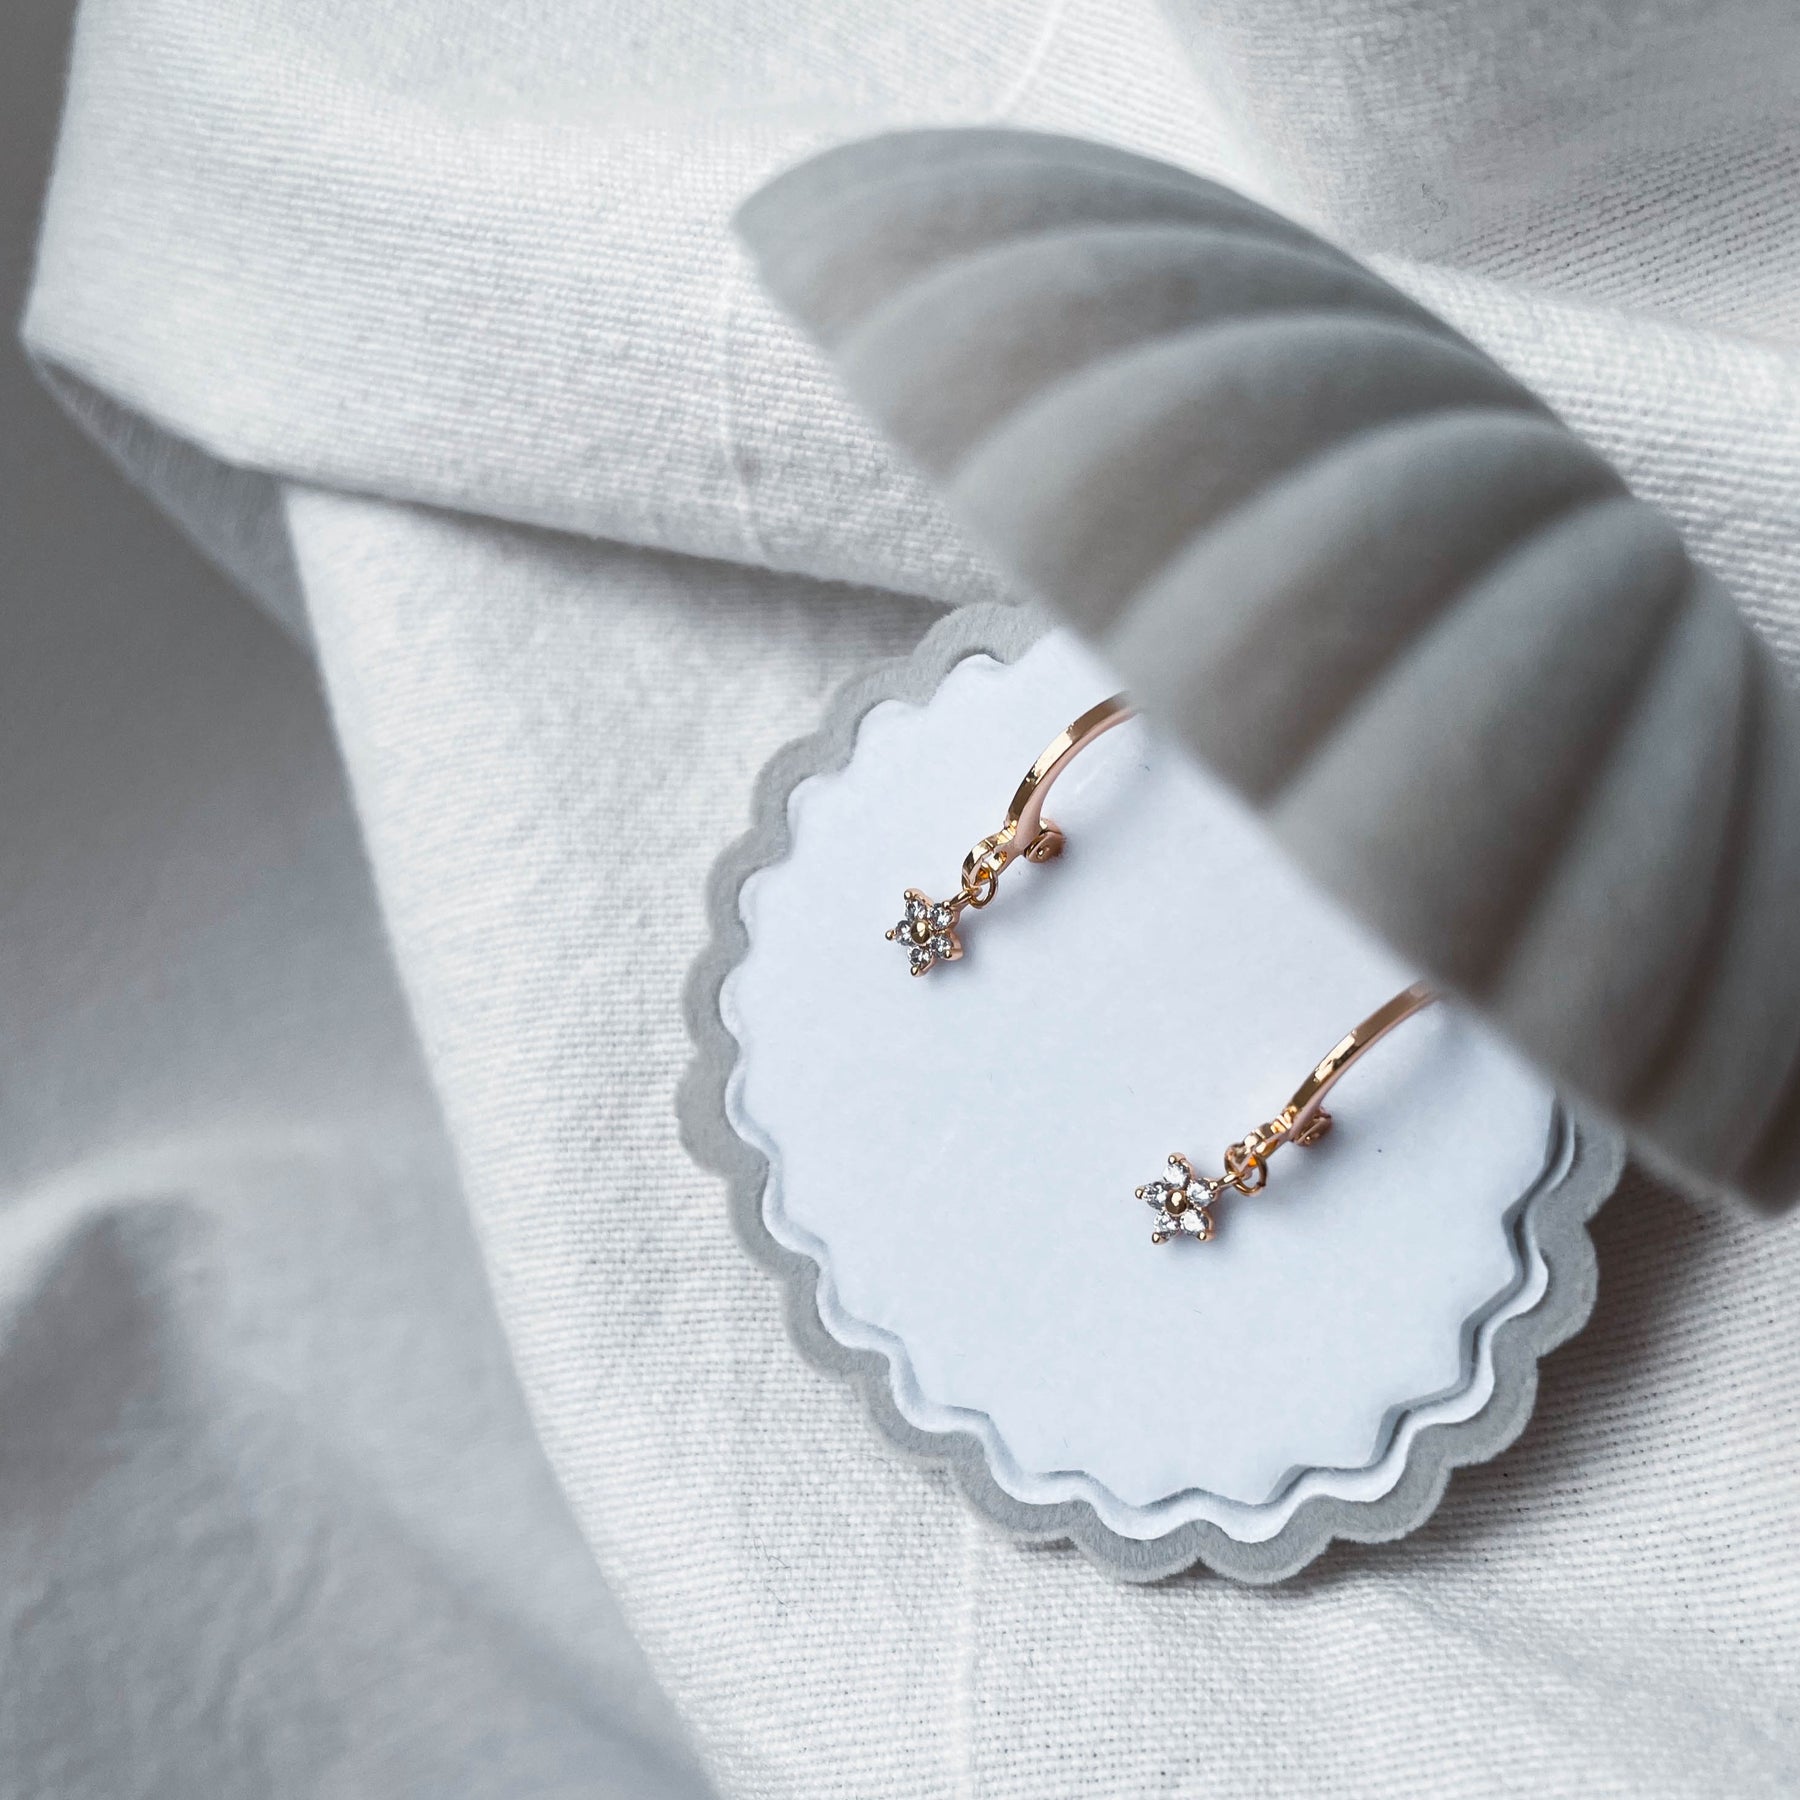 Louise - zarte Halskette mit Zirkonia Blume (Gold oder Silber)